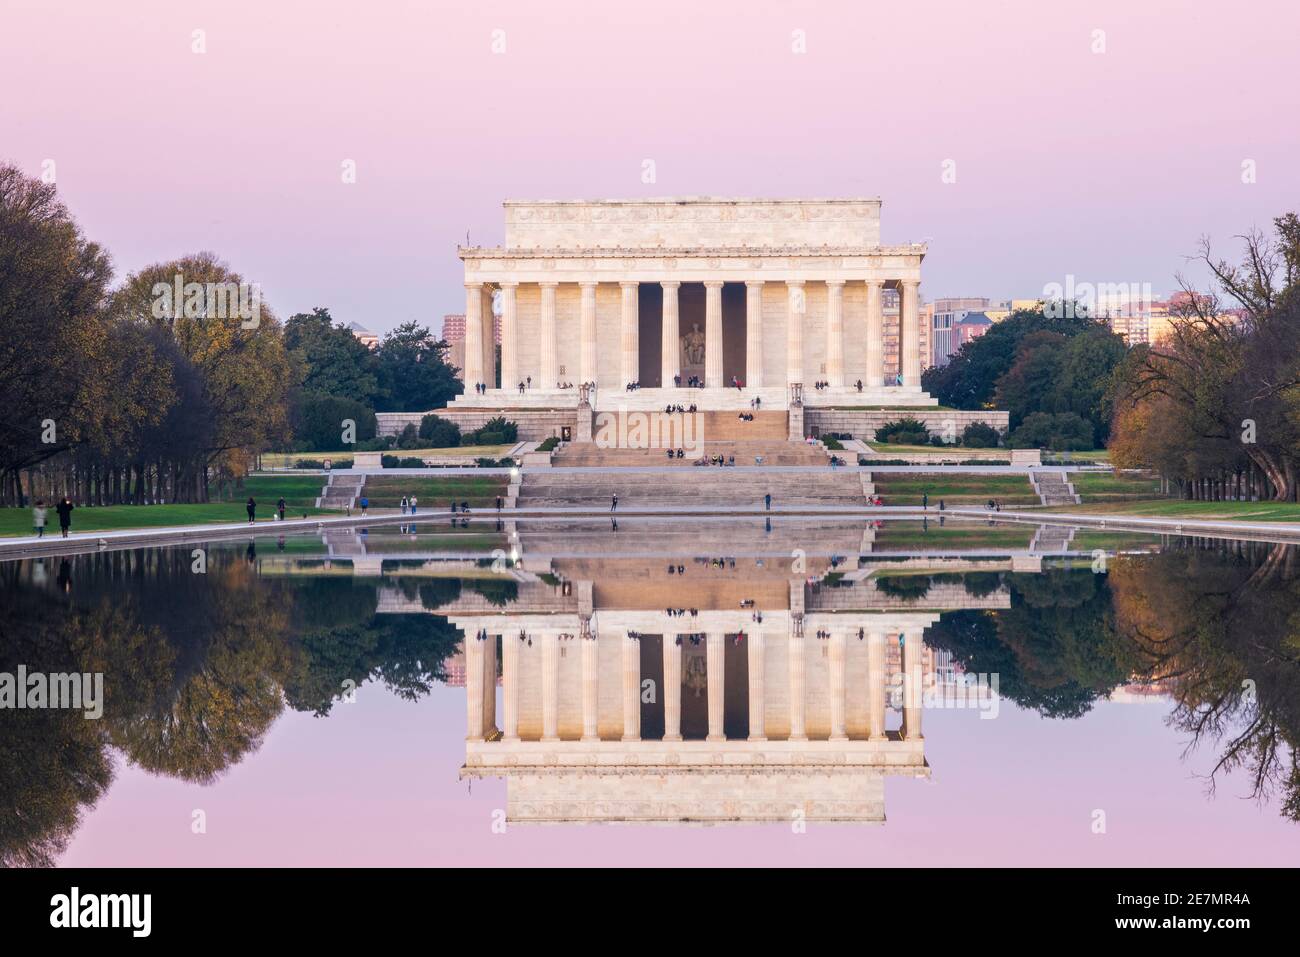 Un cielo rosa e l'iconico Lincoln Memorial in marmo d'avorio si specchiano nella piscina riflettente in una frizzante mattinata d'autunno a Washington, DC. Si trova presso il Foto Stock